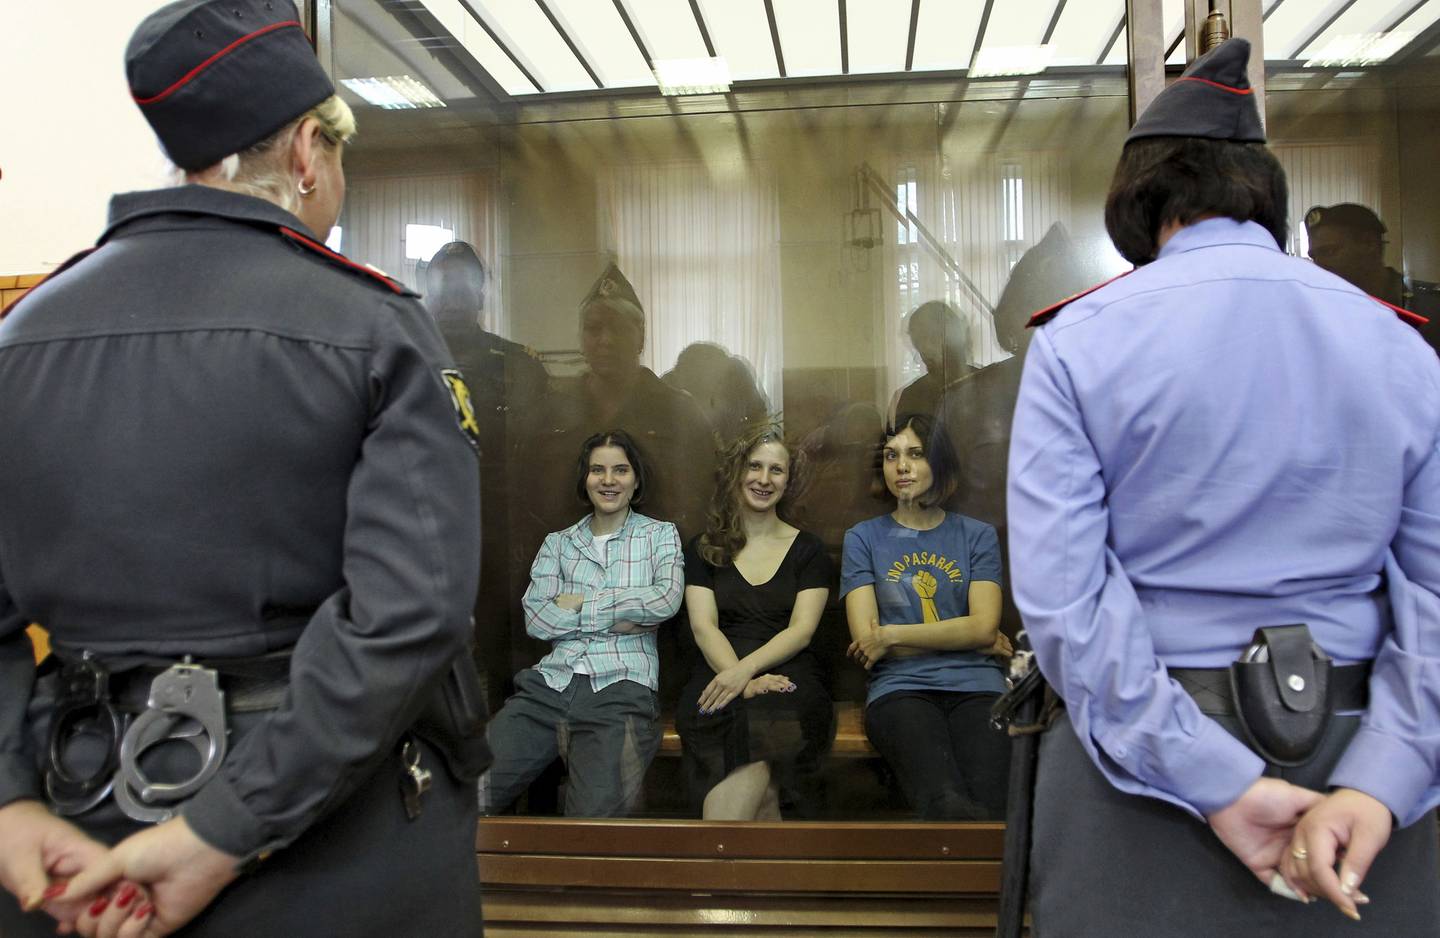 F.v. Jekaterina Samutsevitsj, Marija «Masha» Aljokhina og Nadezjda Tolokonnikova, alle tre Pussy Riot-medlemmer, fotografert i et glassbur i rettssalen i Moskva den 17. august 2012. Alle tre ble dømt for «pøbelvirksomhet», selv om to av dem er mødre, men Samutsevitsj fikk dommen betinget.